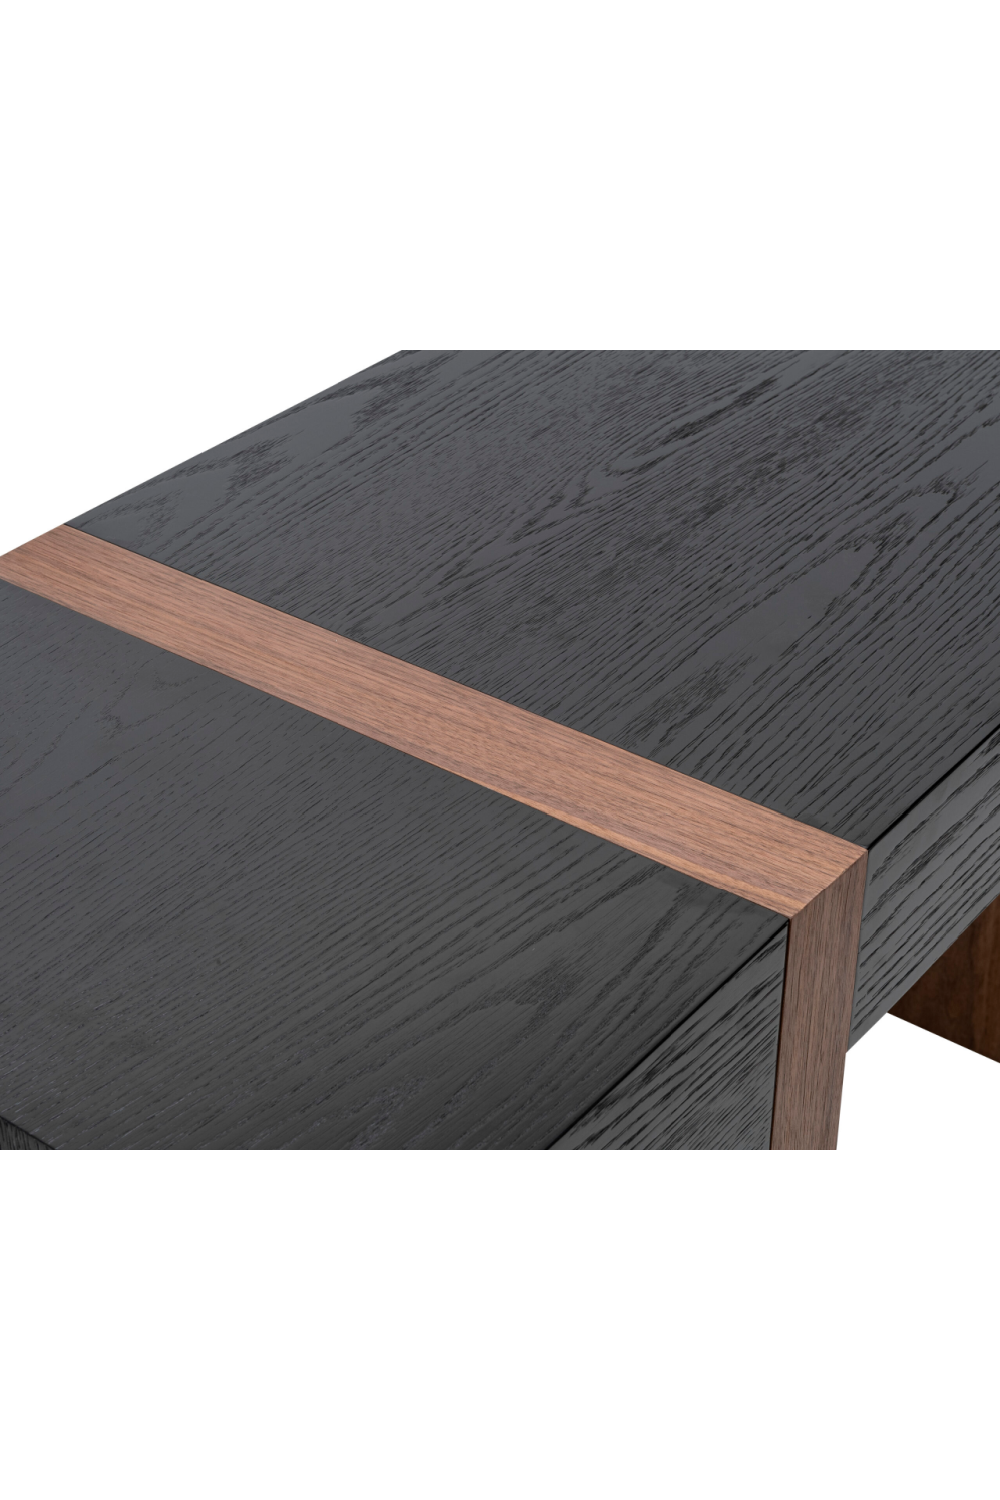 2-Tone Wooden Desk | Liang & Eimil Borgo | #1 Eichholtz Retailer